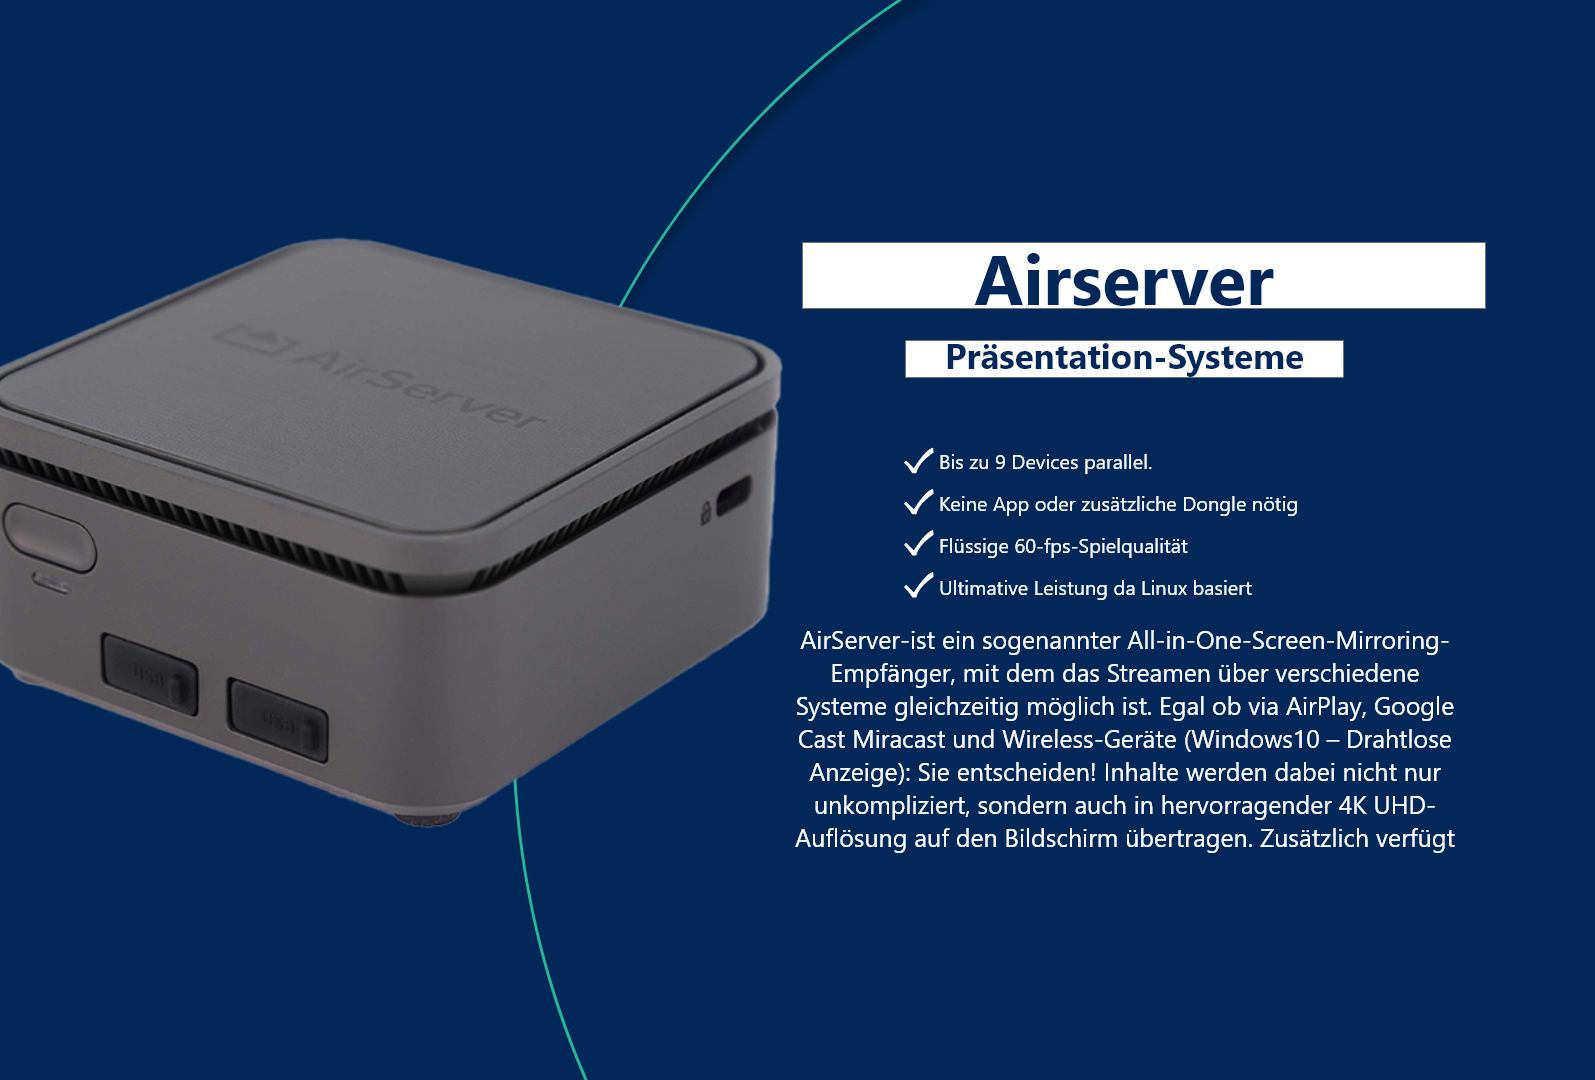 Airserver Connect 2 - Drahtlose Übertragung mit 4k UHD